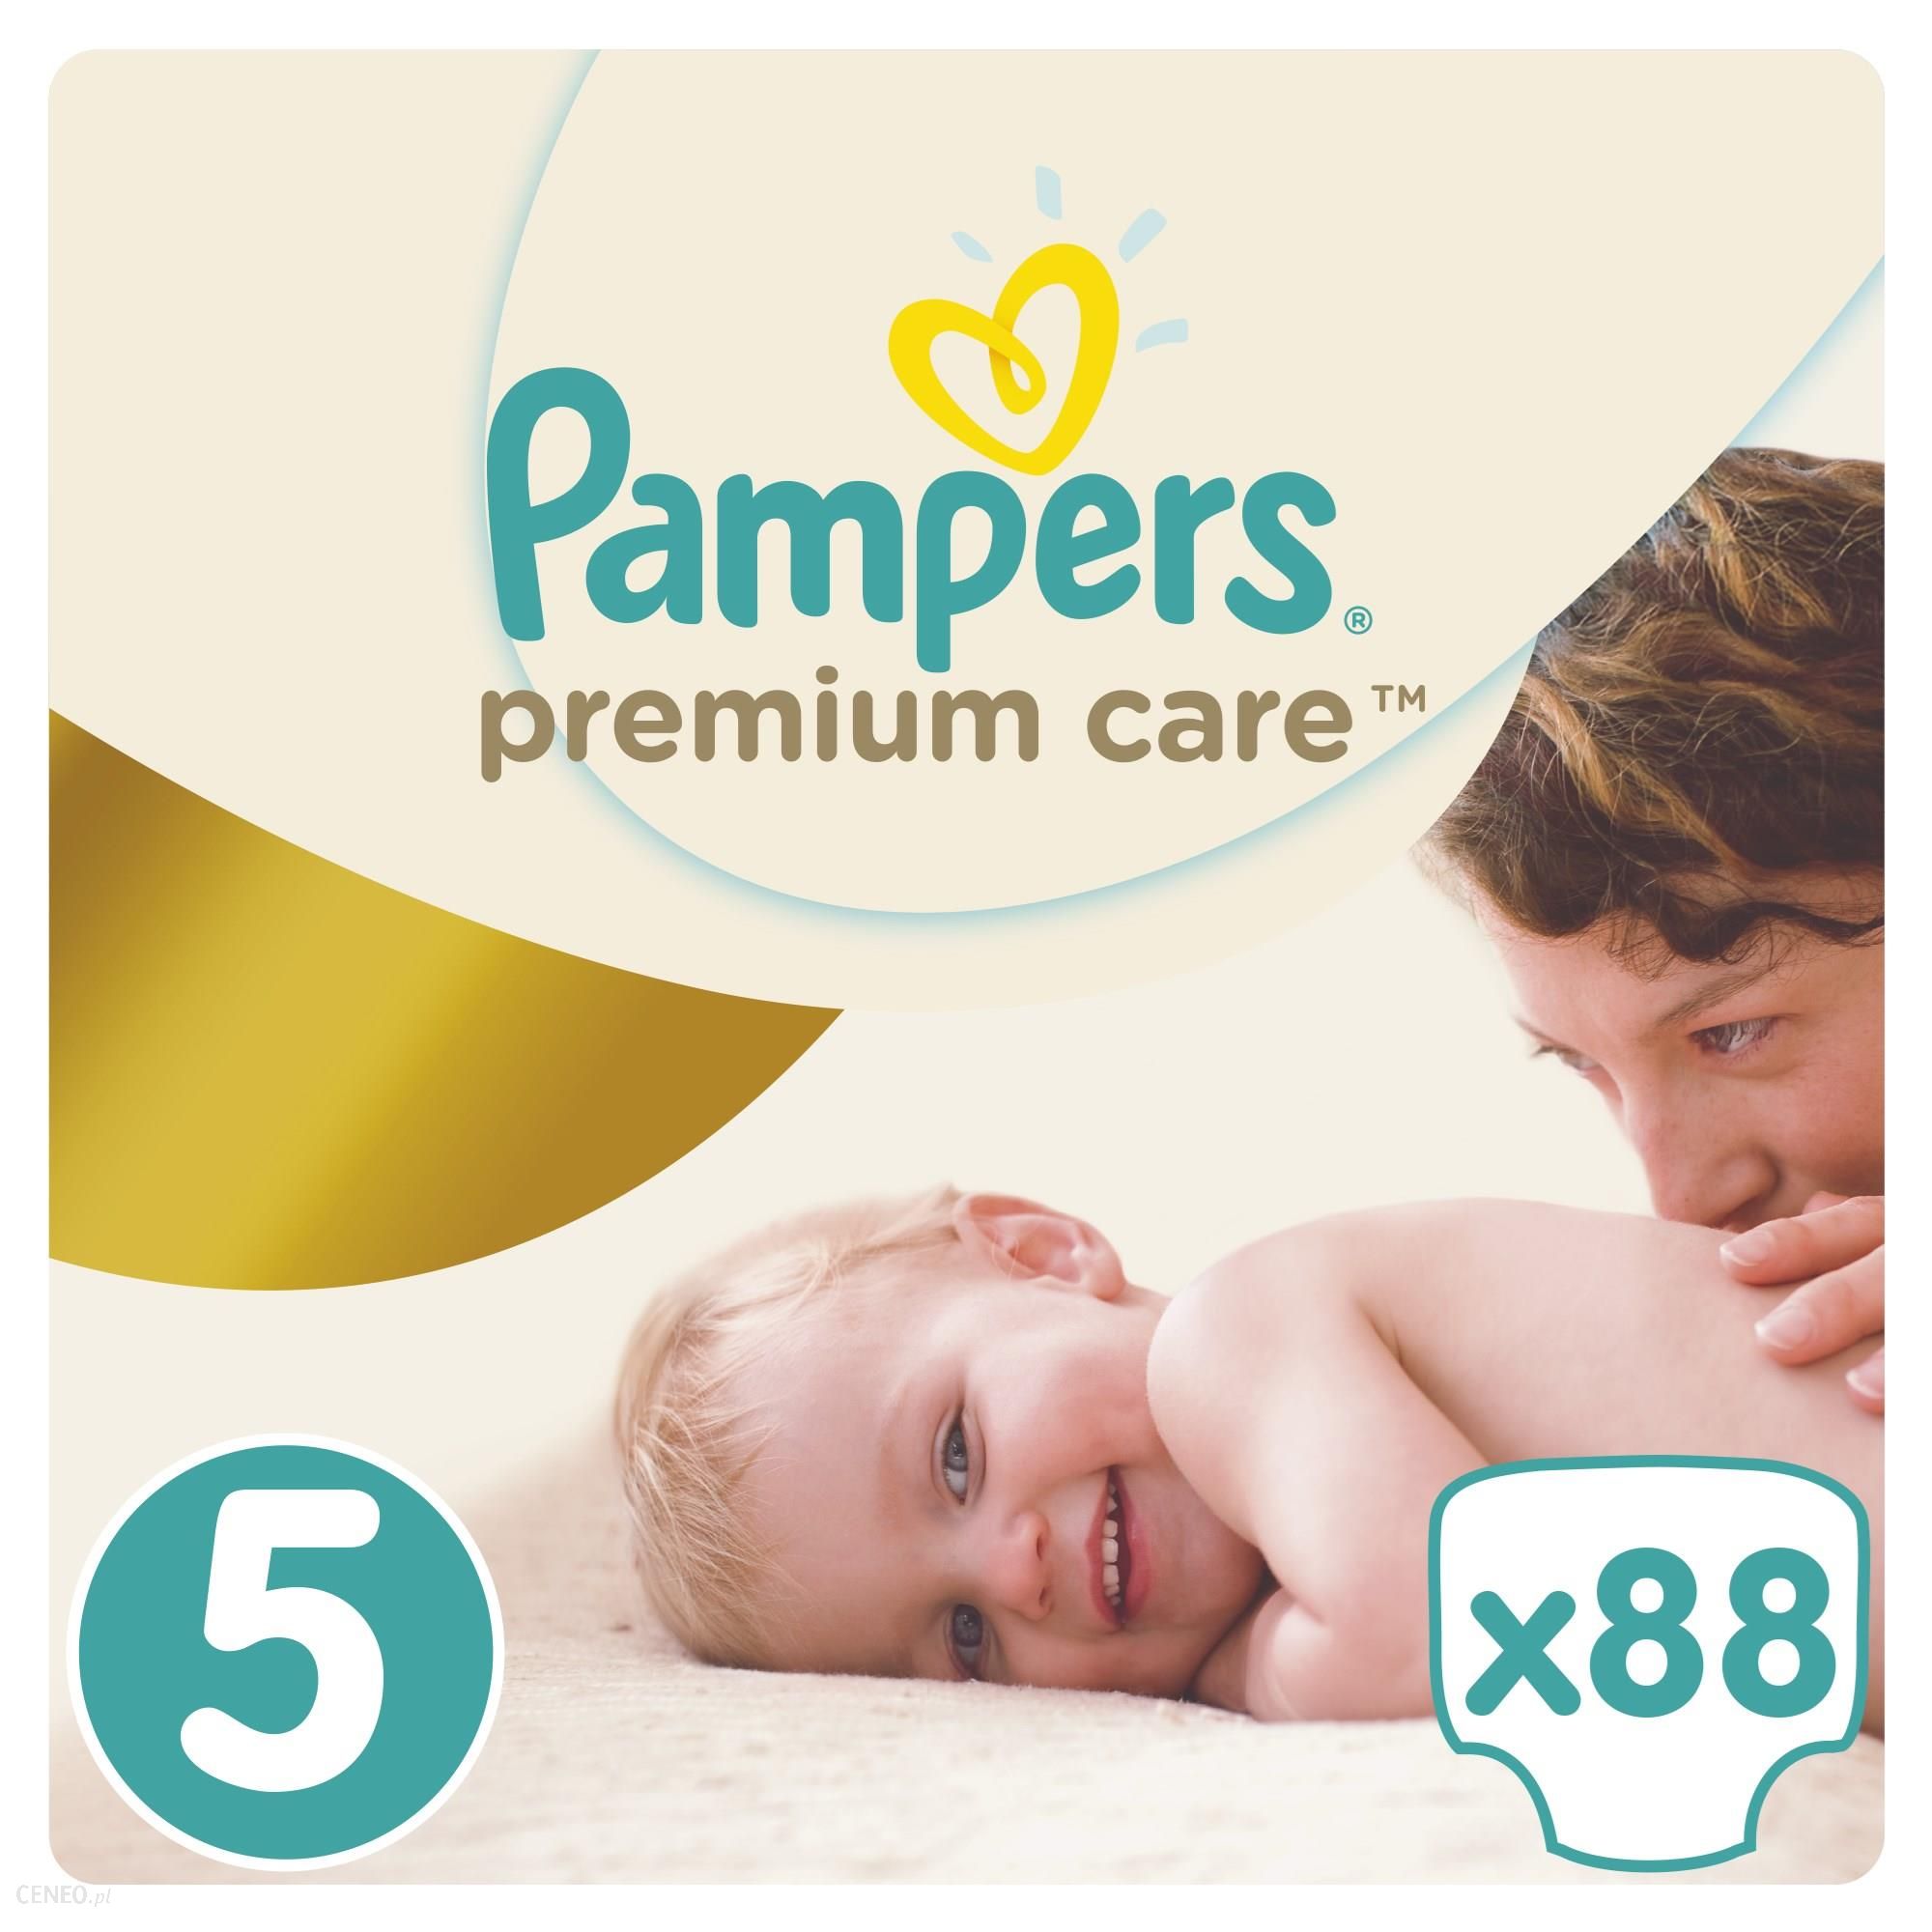 pampers premium care 1 newborn 22 szt